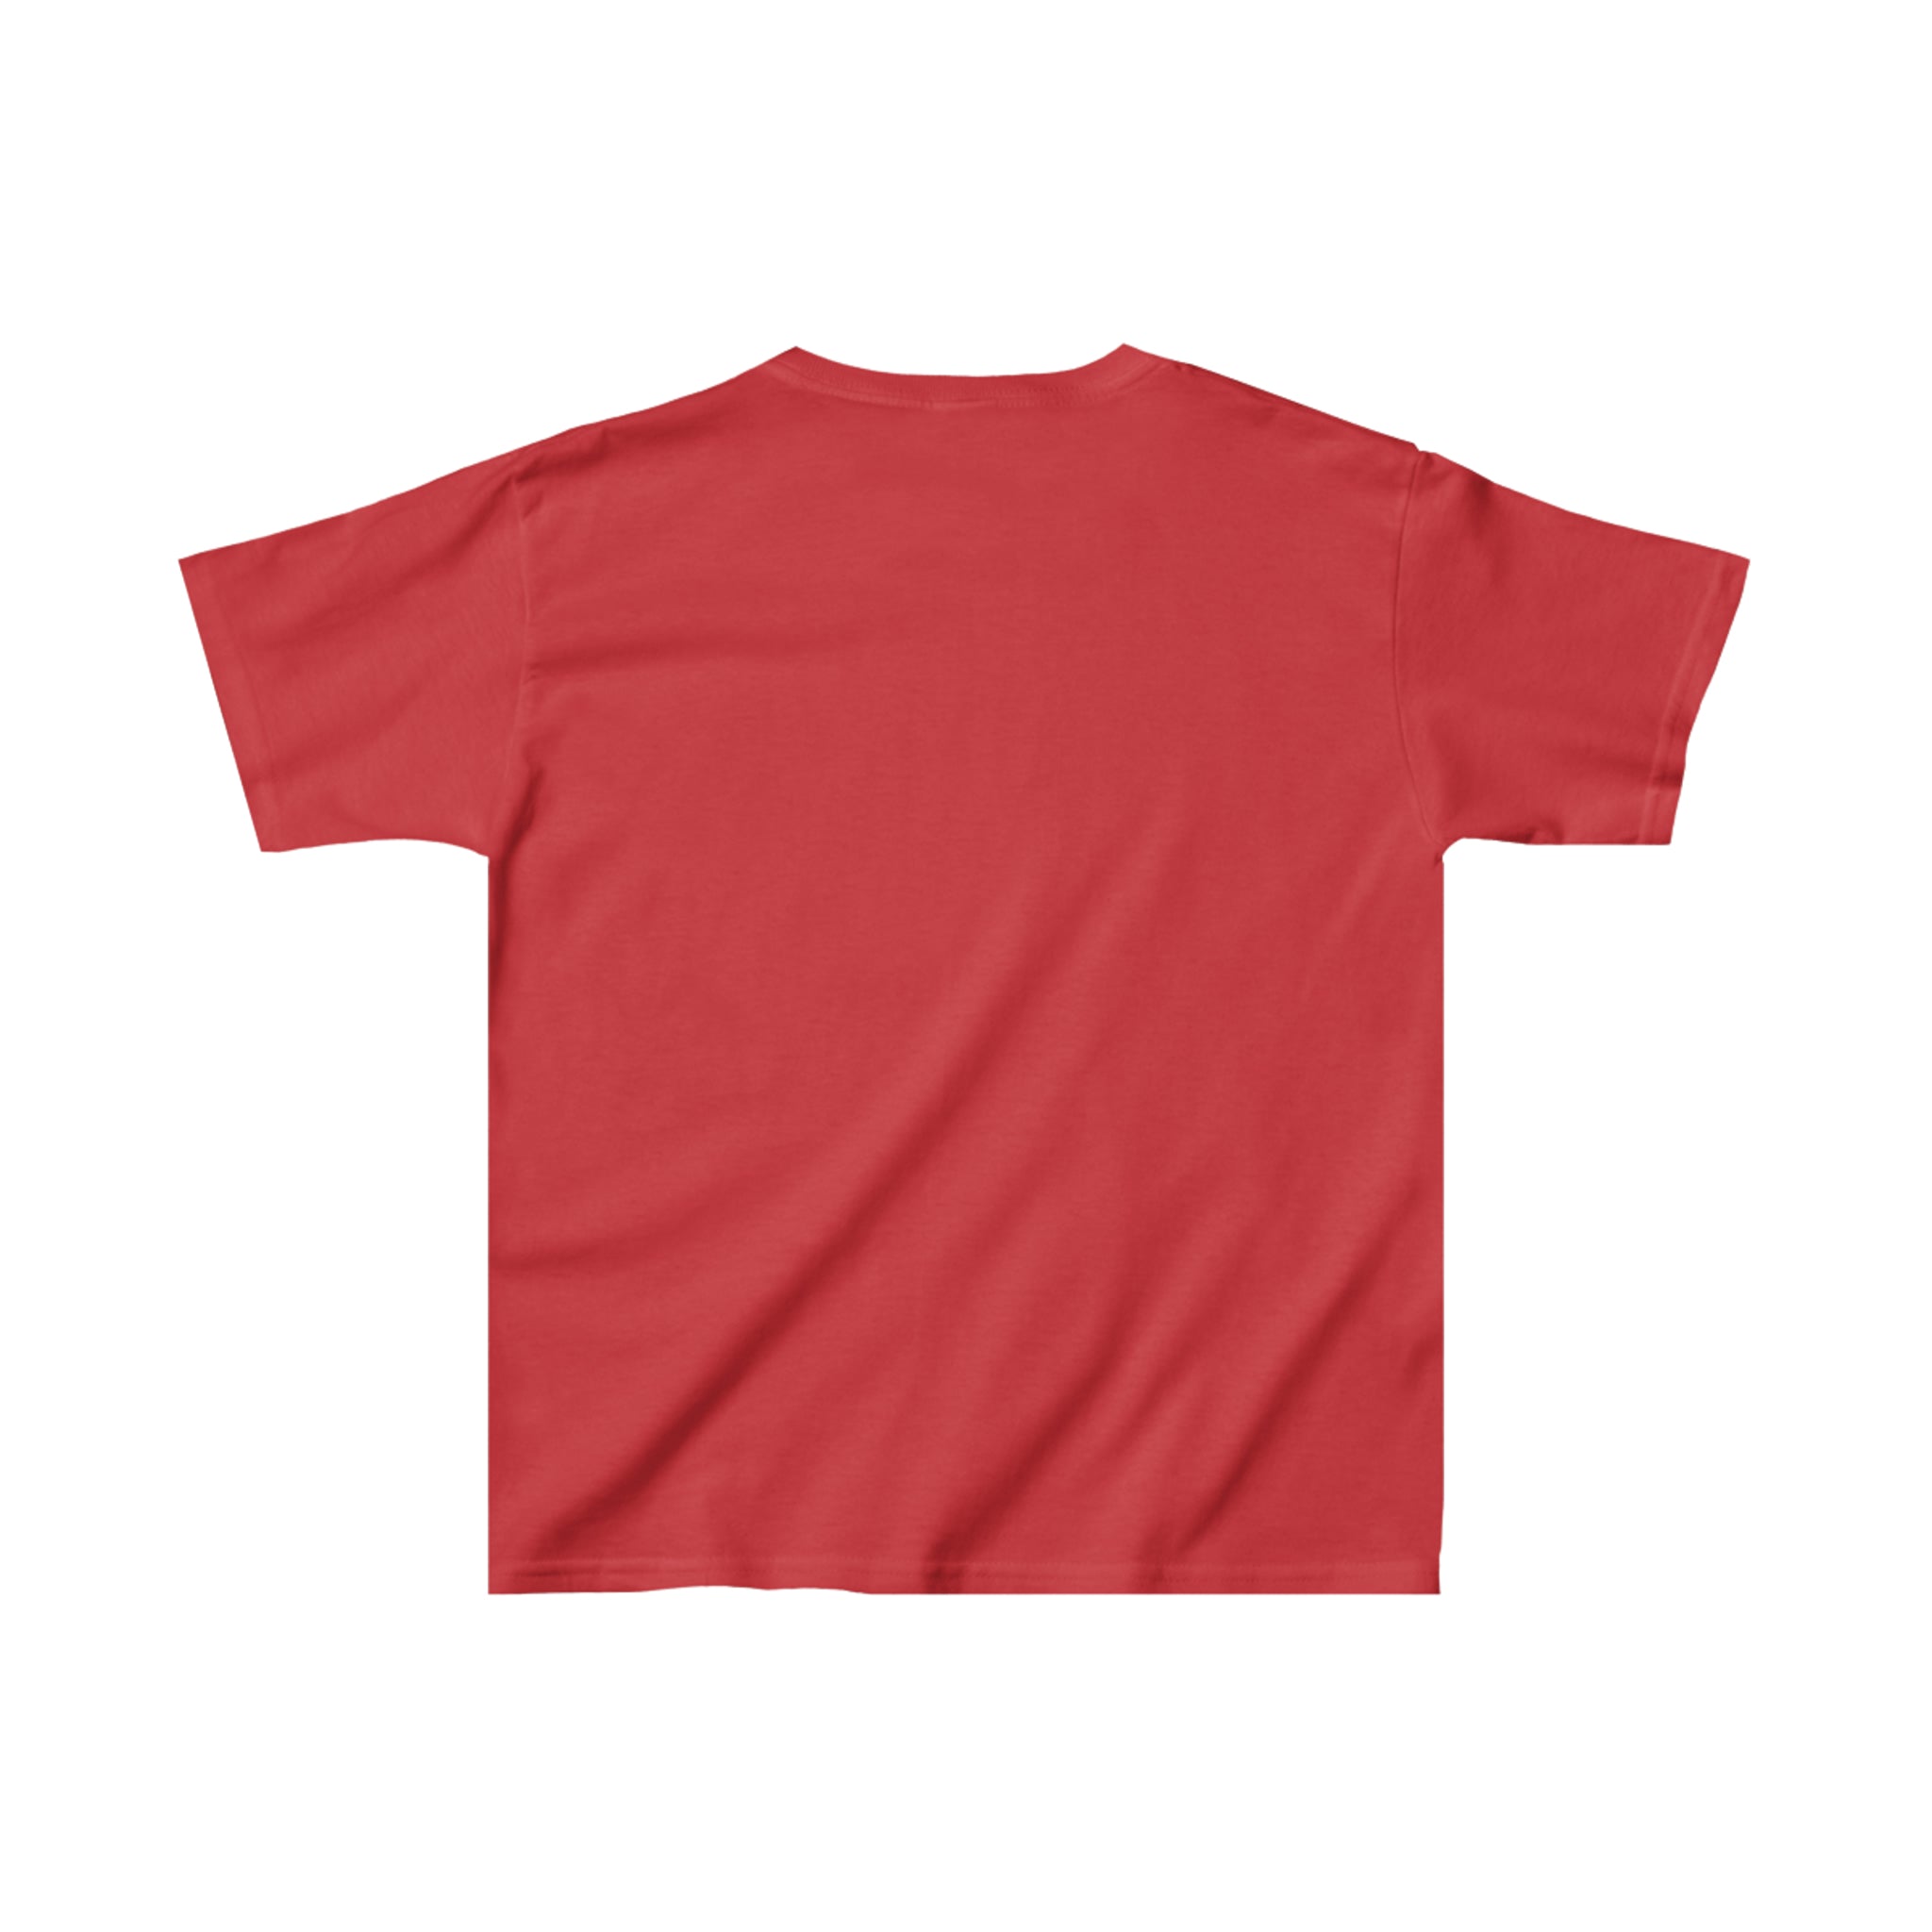 Houston Apollos T-Shirt (Youth)